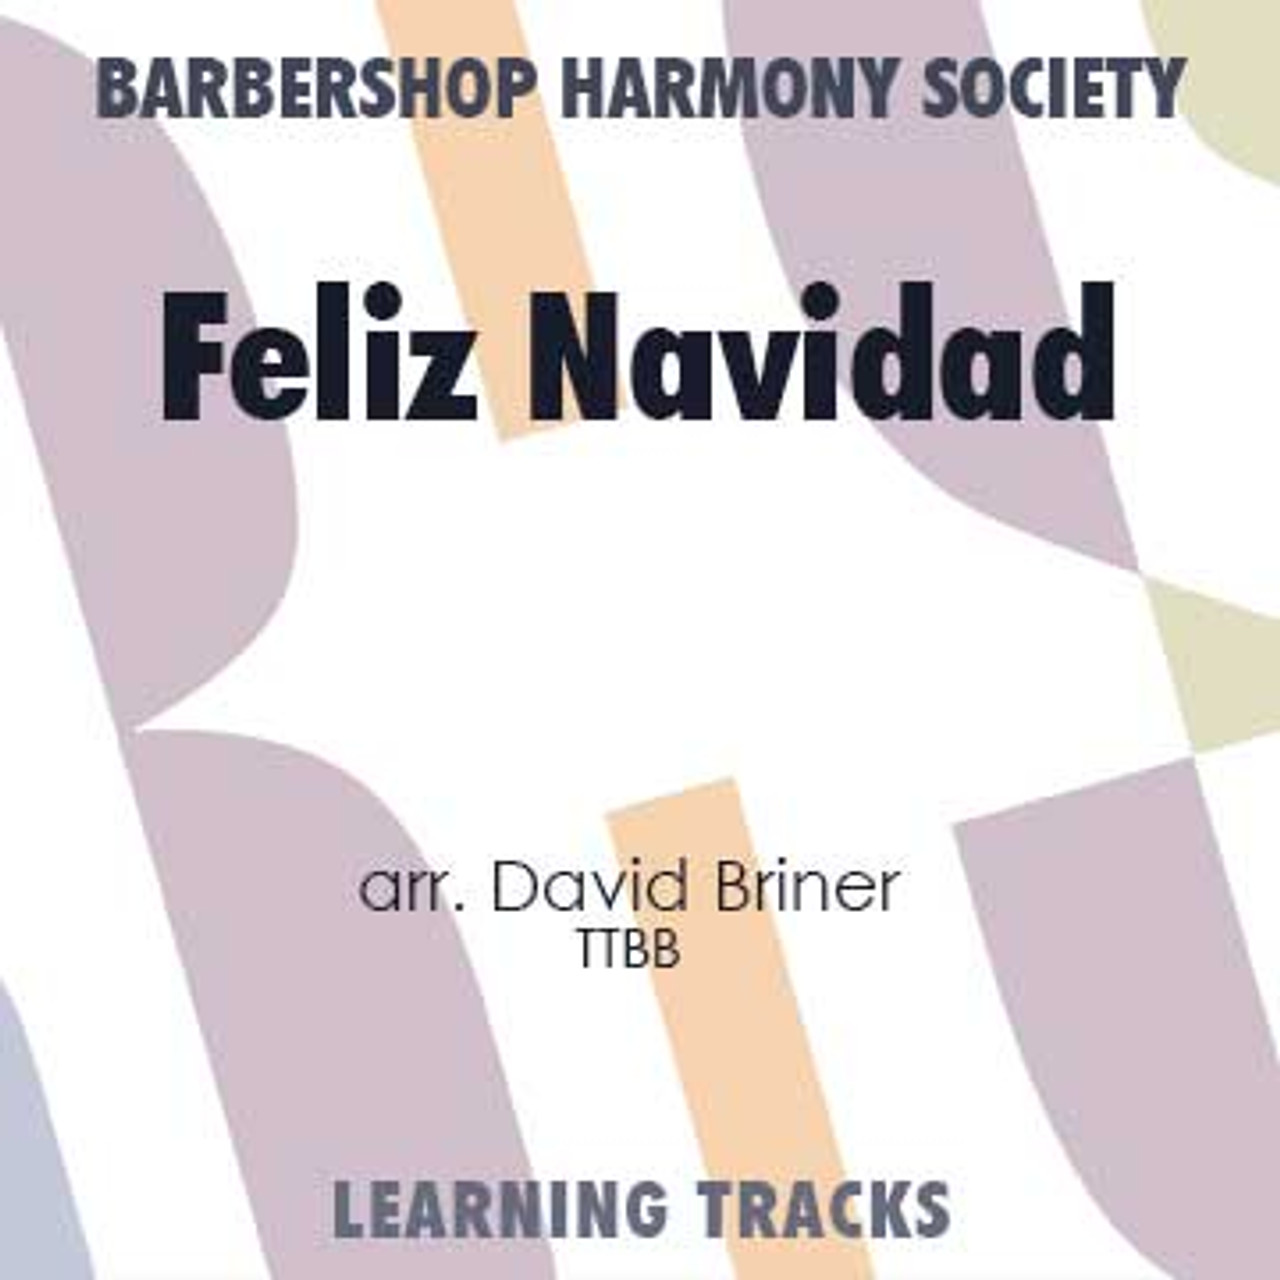 Feliz Navidad (TTBB) (arr. Briner) - Digital Learning Tracks for 200363